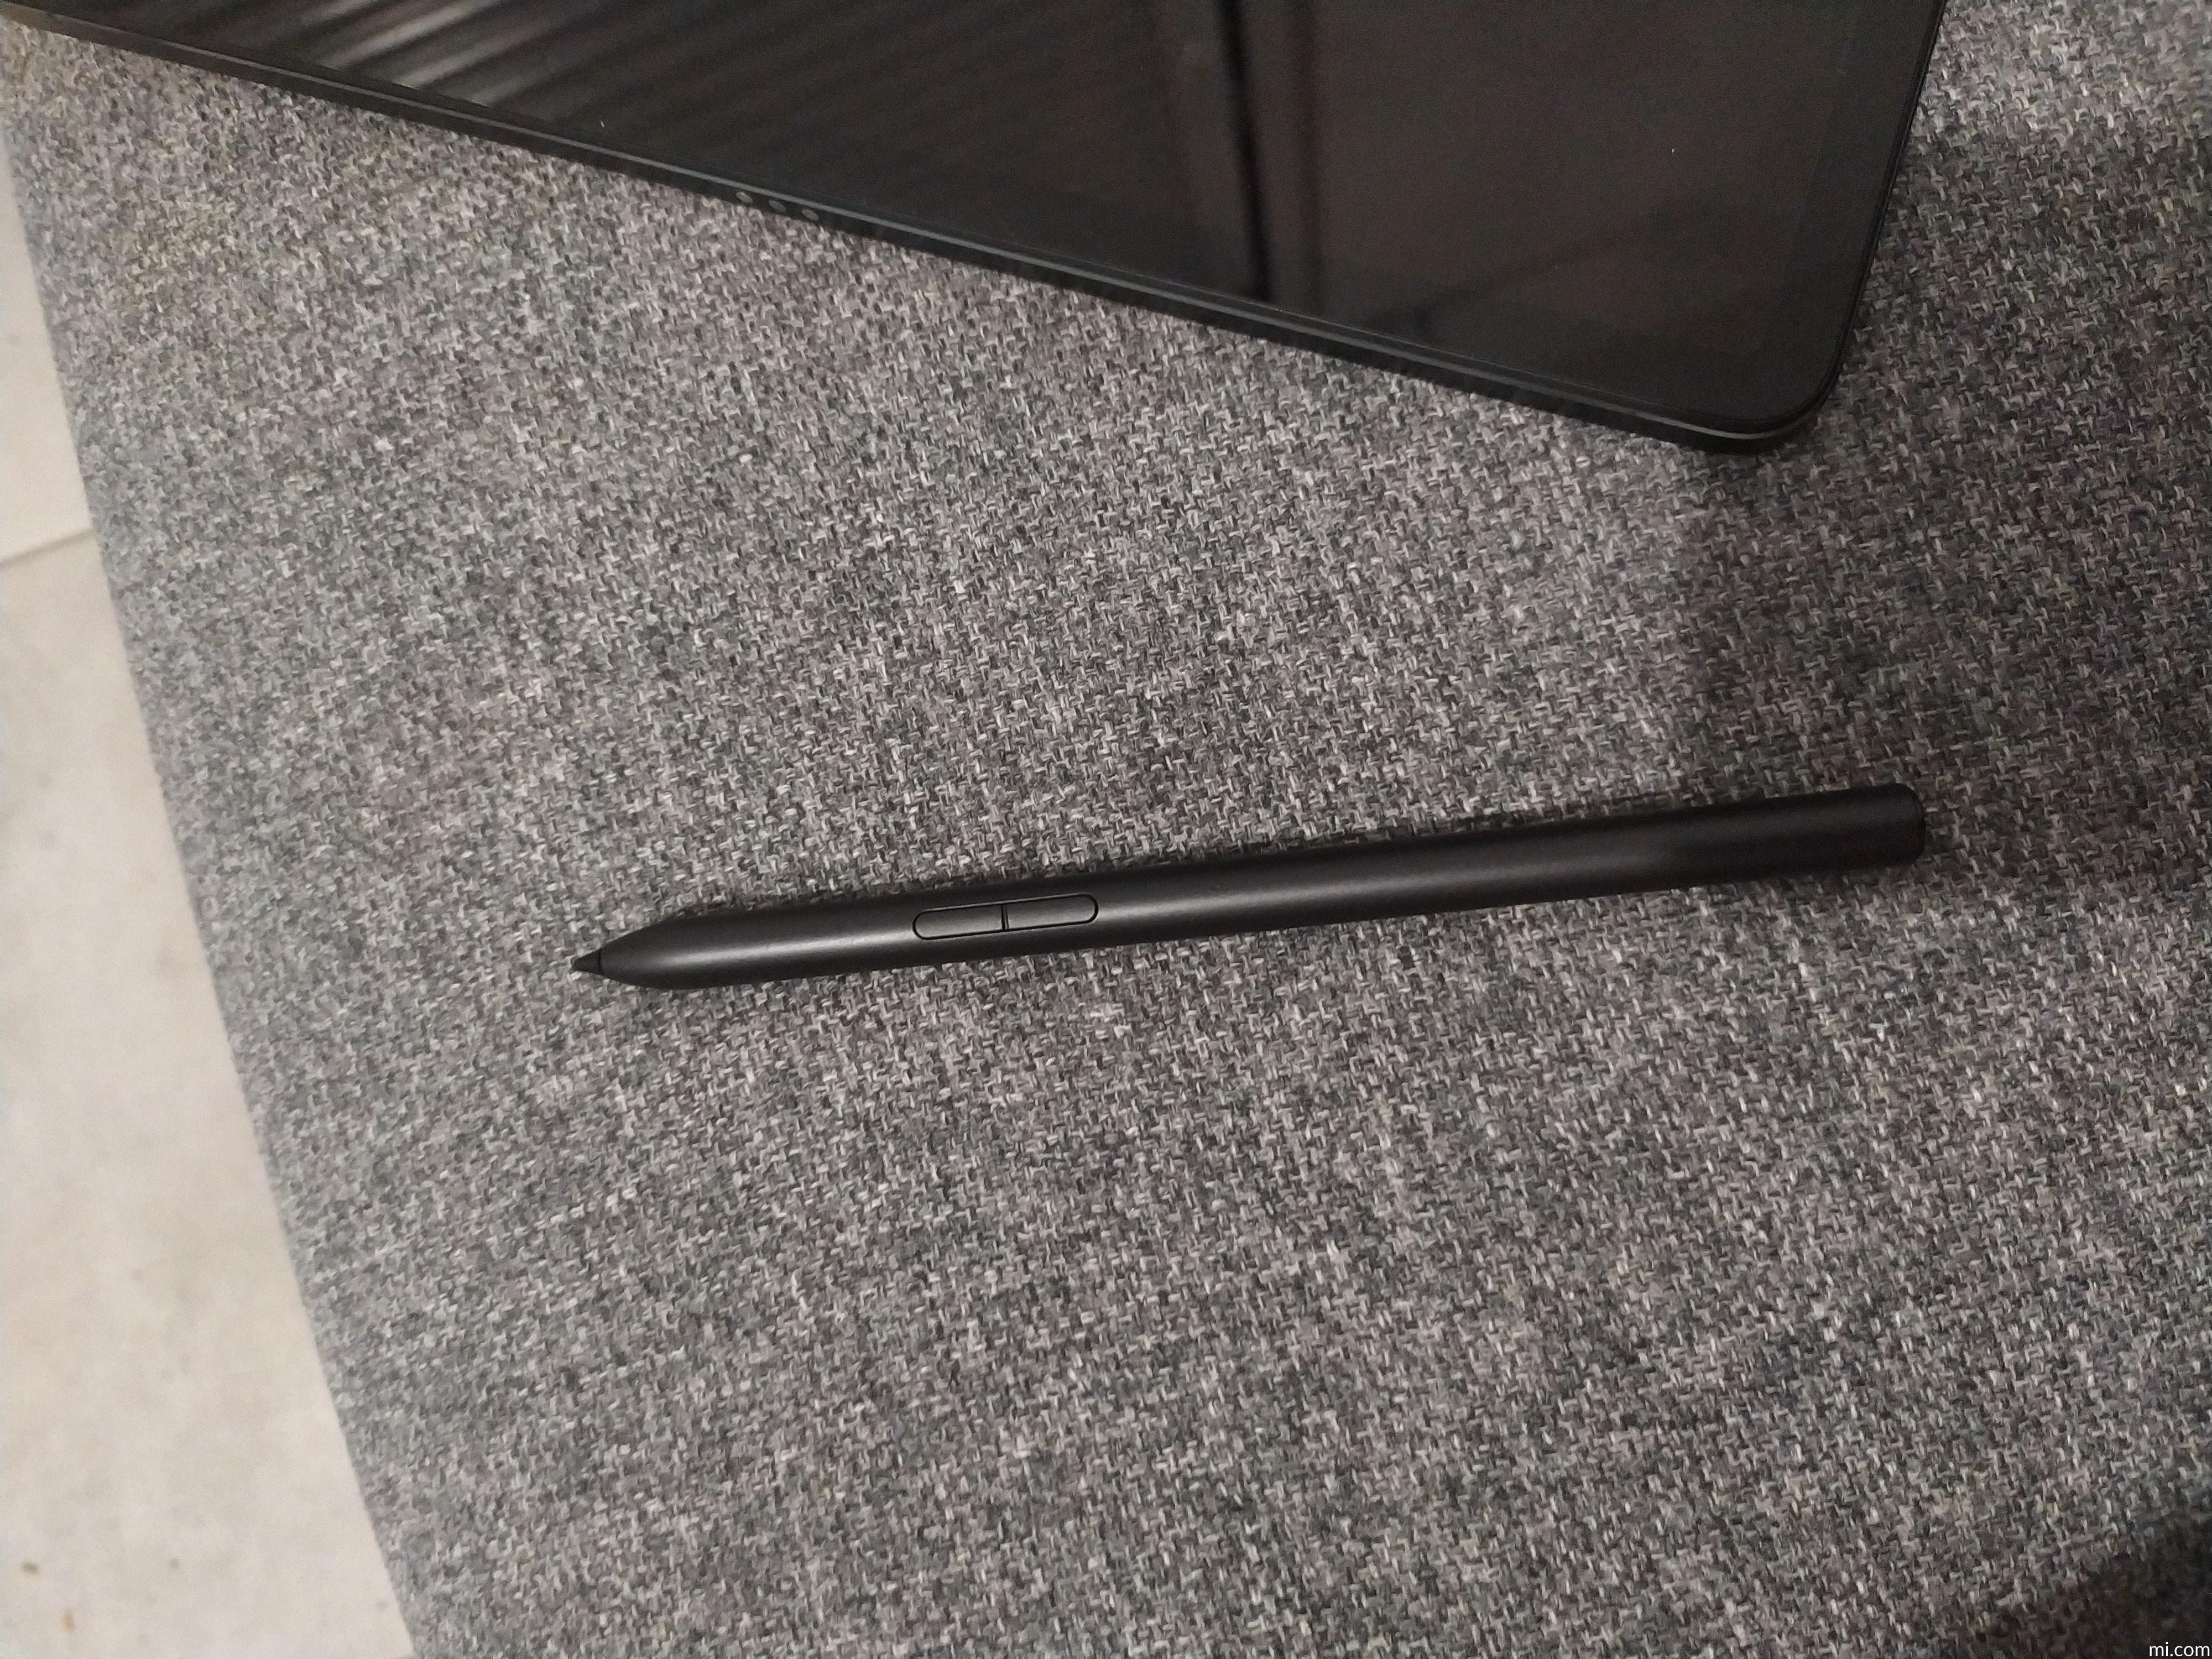 Stylet noir-Xiaomi-Stylet pour Mi Pad 5, 152mm, tablette, écran tactile,  stylet intelligent